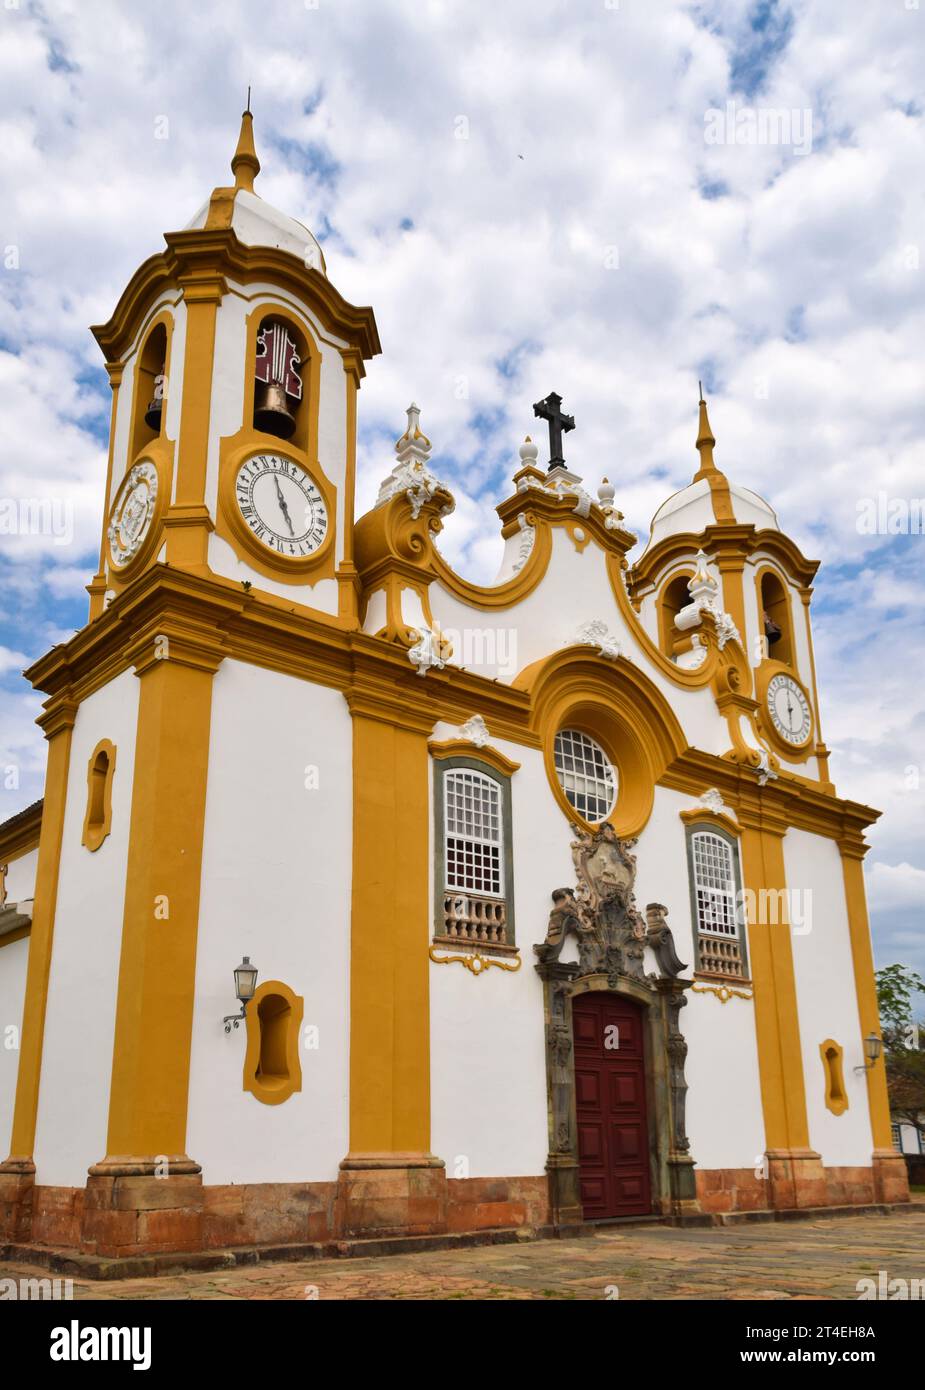 Église Santo Antônio, située à Tiradentes, état de Minas Gerais, Brésil Banque D'Images